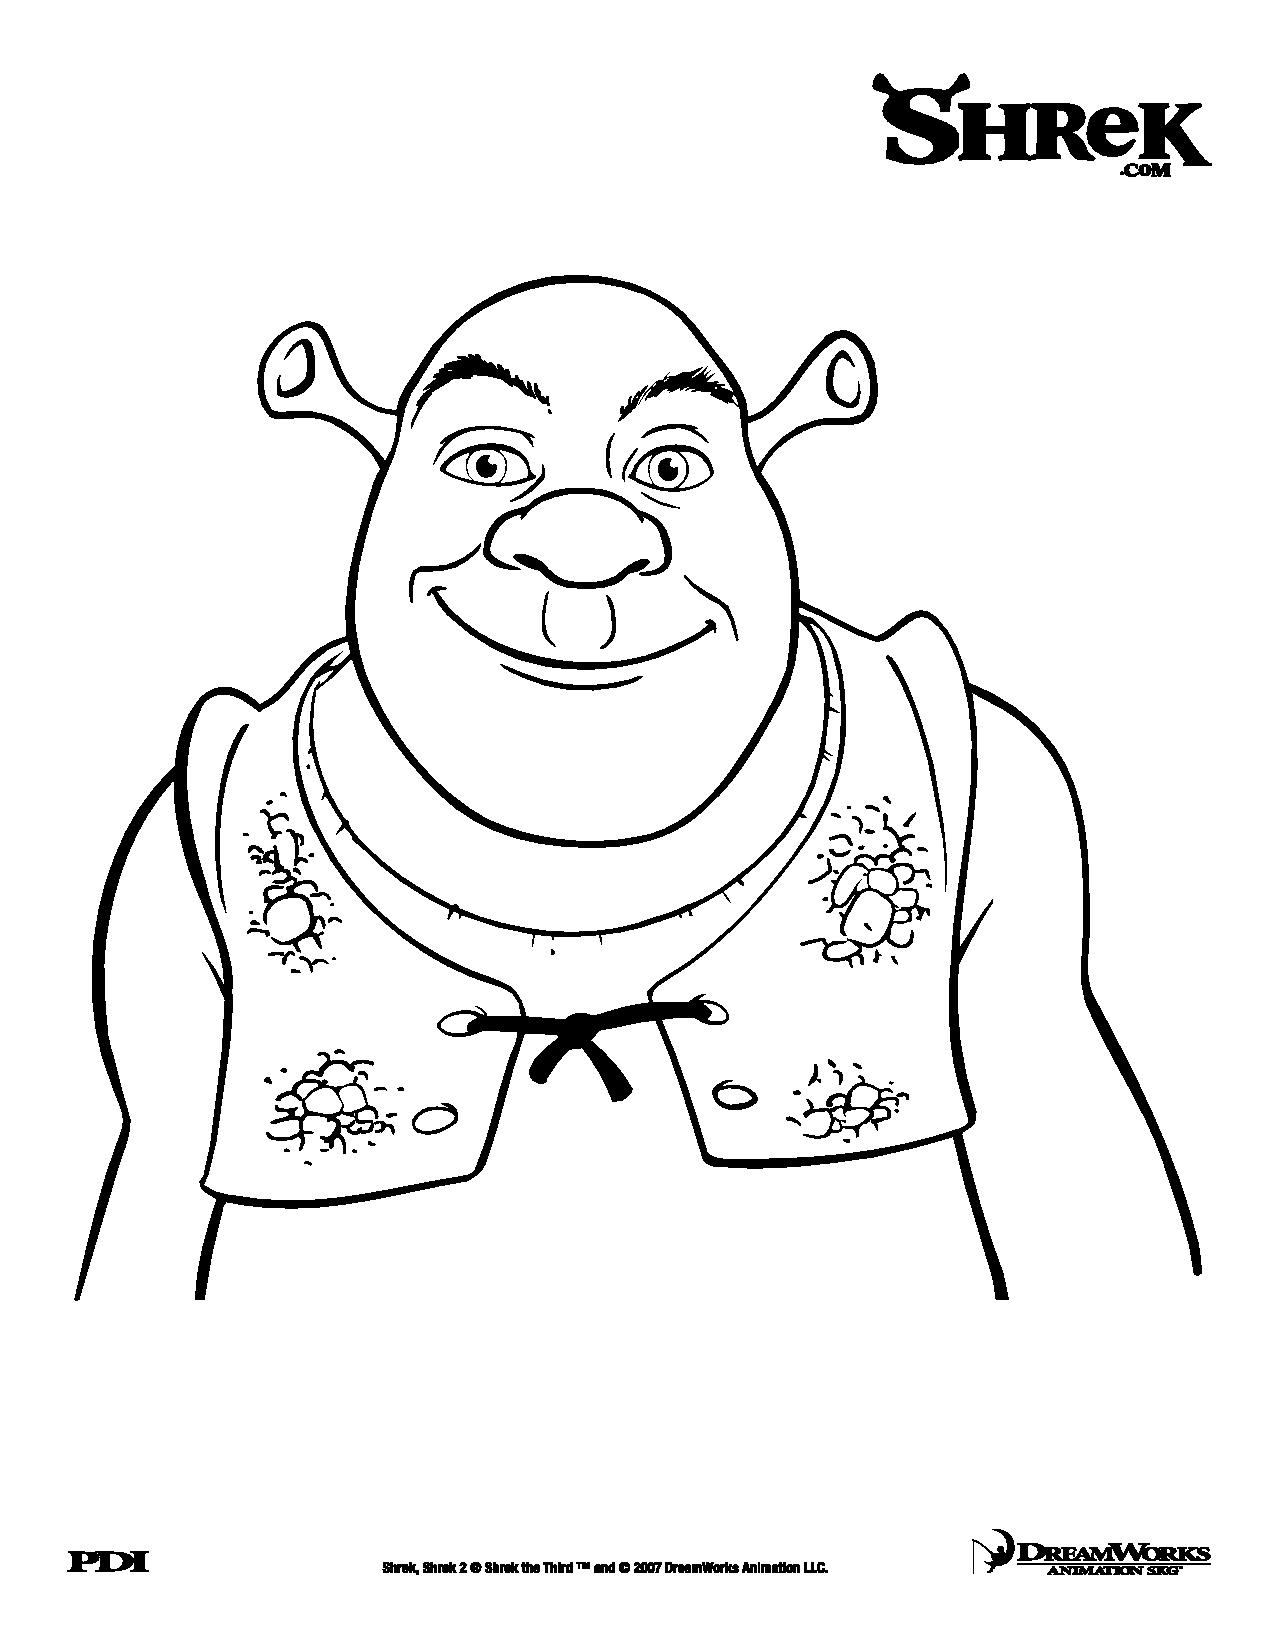 ¡Un ogro sonriente! Y sí, es Shrek, el único...